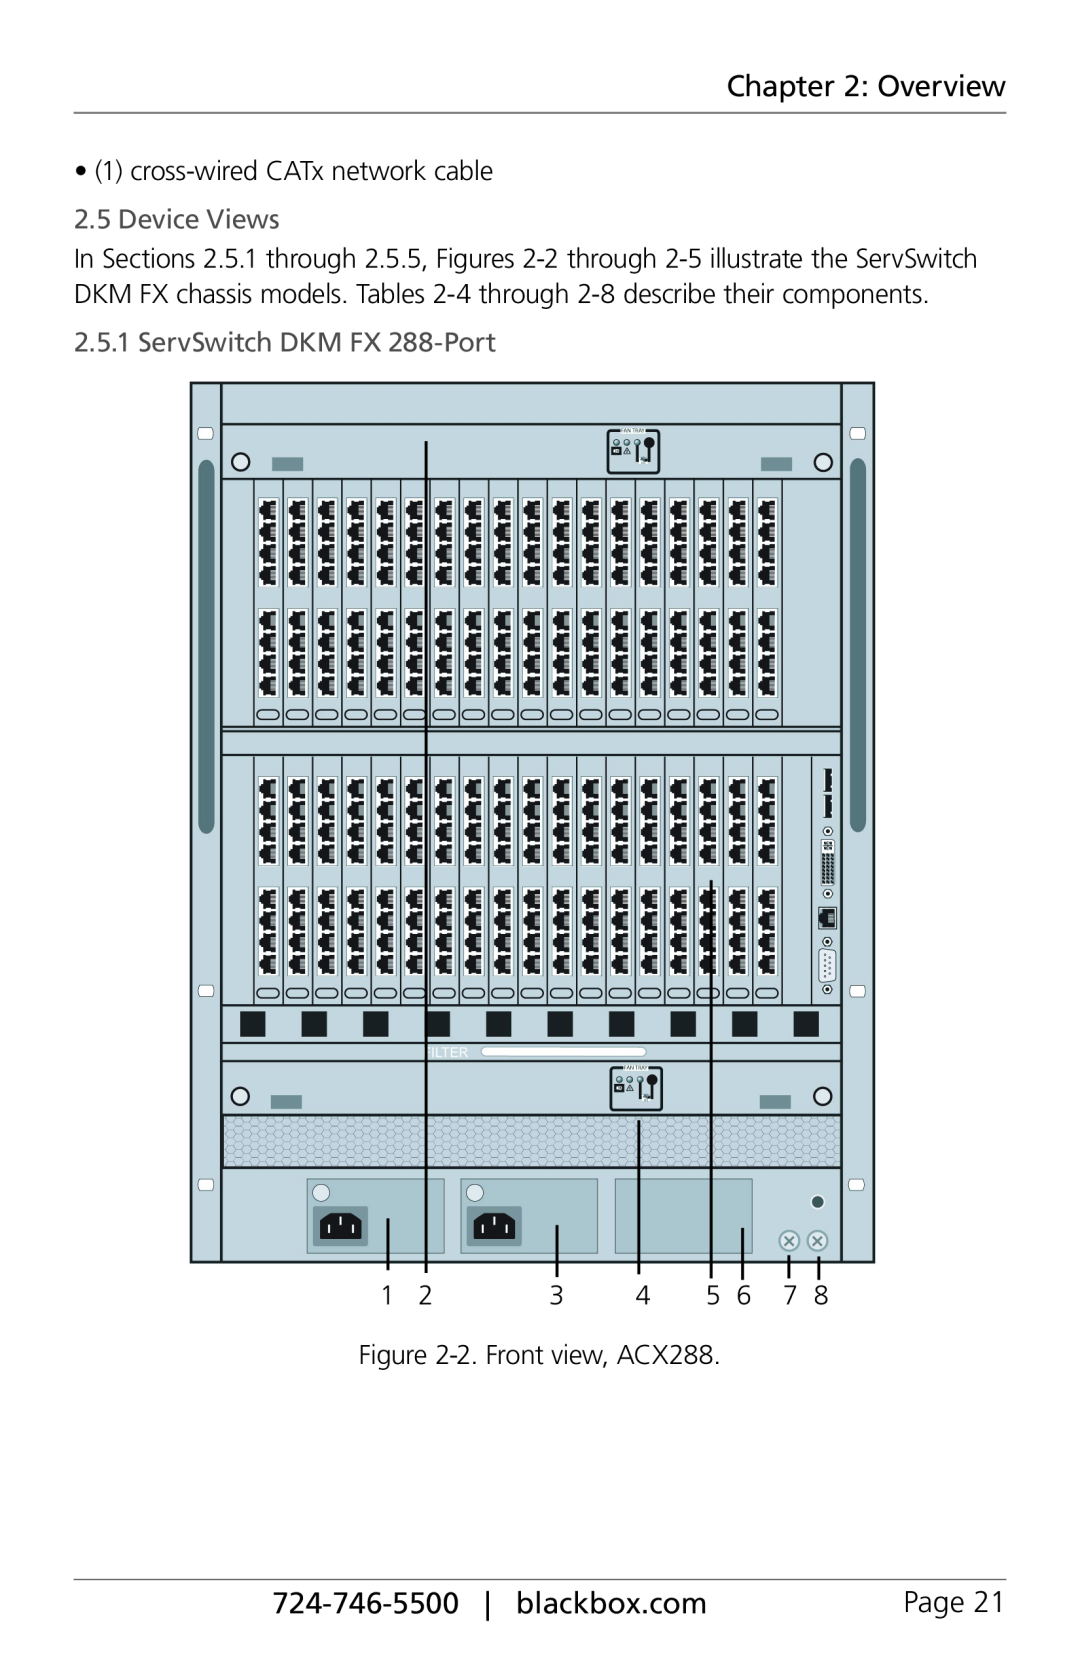 Black Box ACX288-CTL, ACXIO8-C, ACXSFPC manual Device Views, ServSwitch DKM FX 288-Port, Overview, 724-746-5500| blackbox.com 